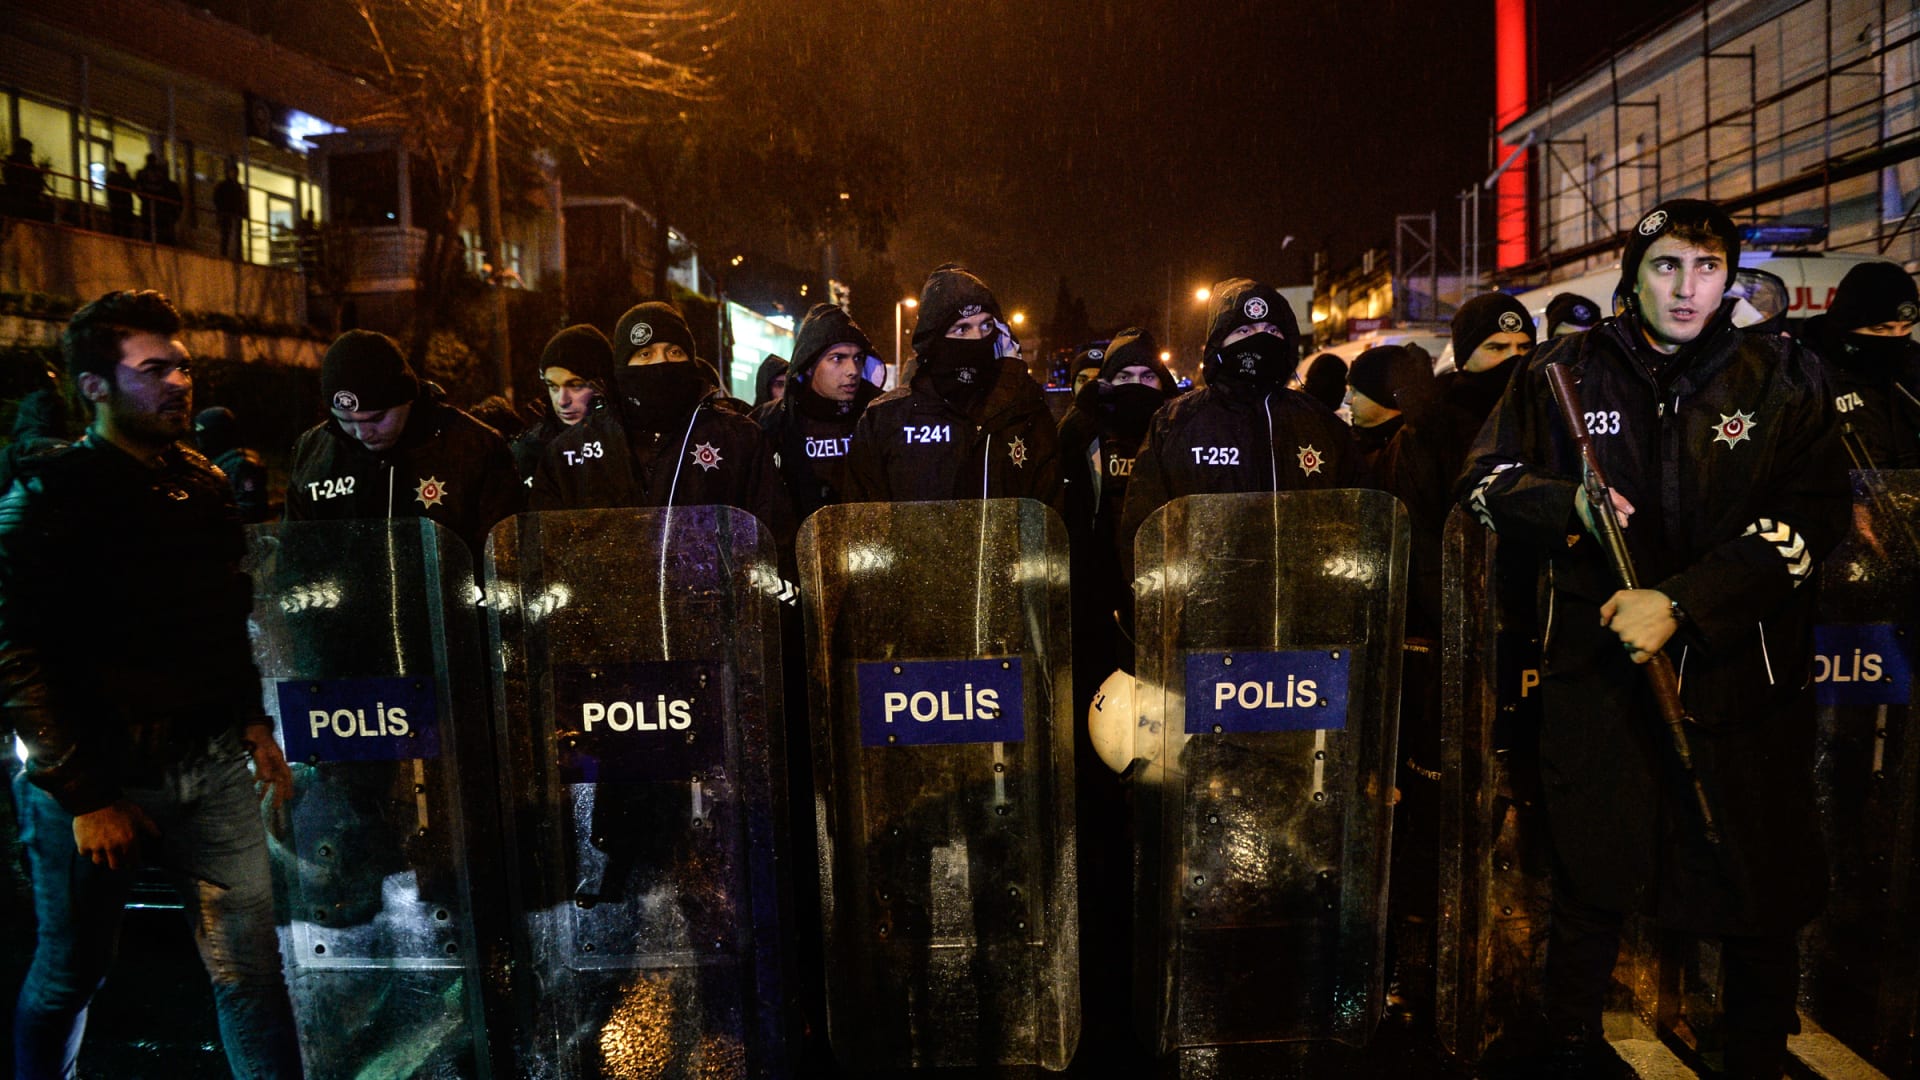 شاهد اللحظات الأولى بعد هجوم إطلاق النار في ملهى ليلي بتركيا خلال احتفالات رأس السنة